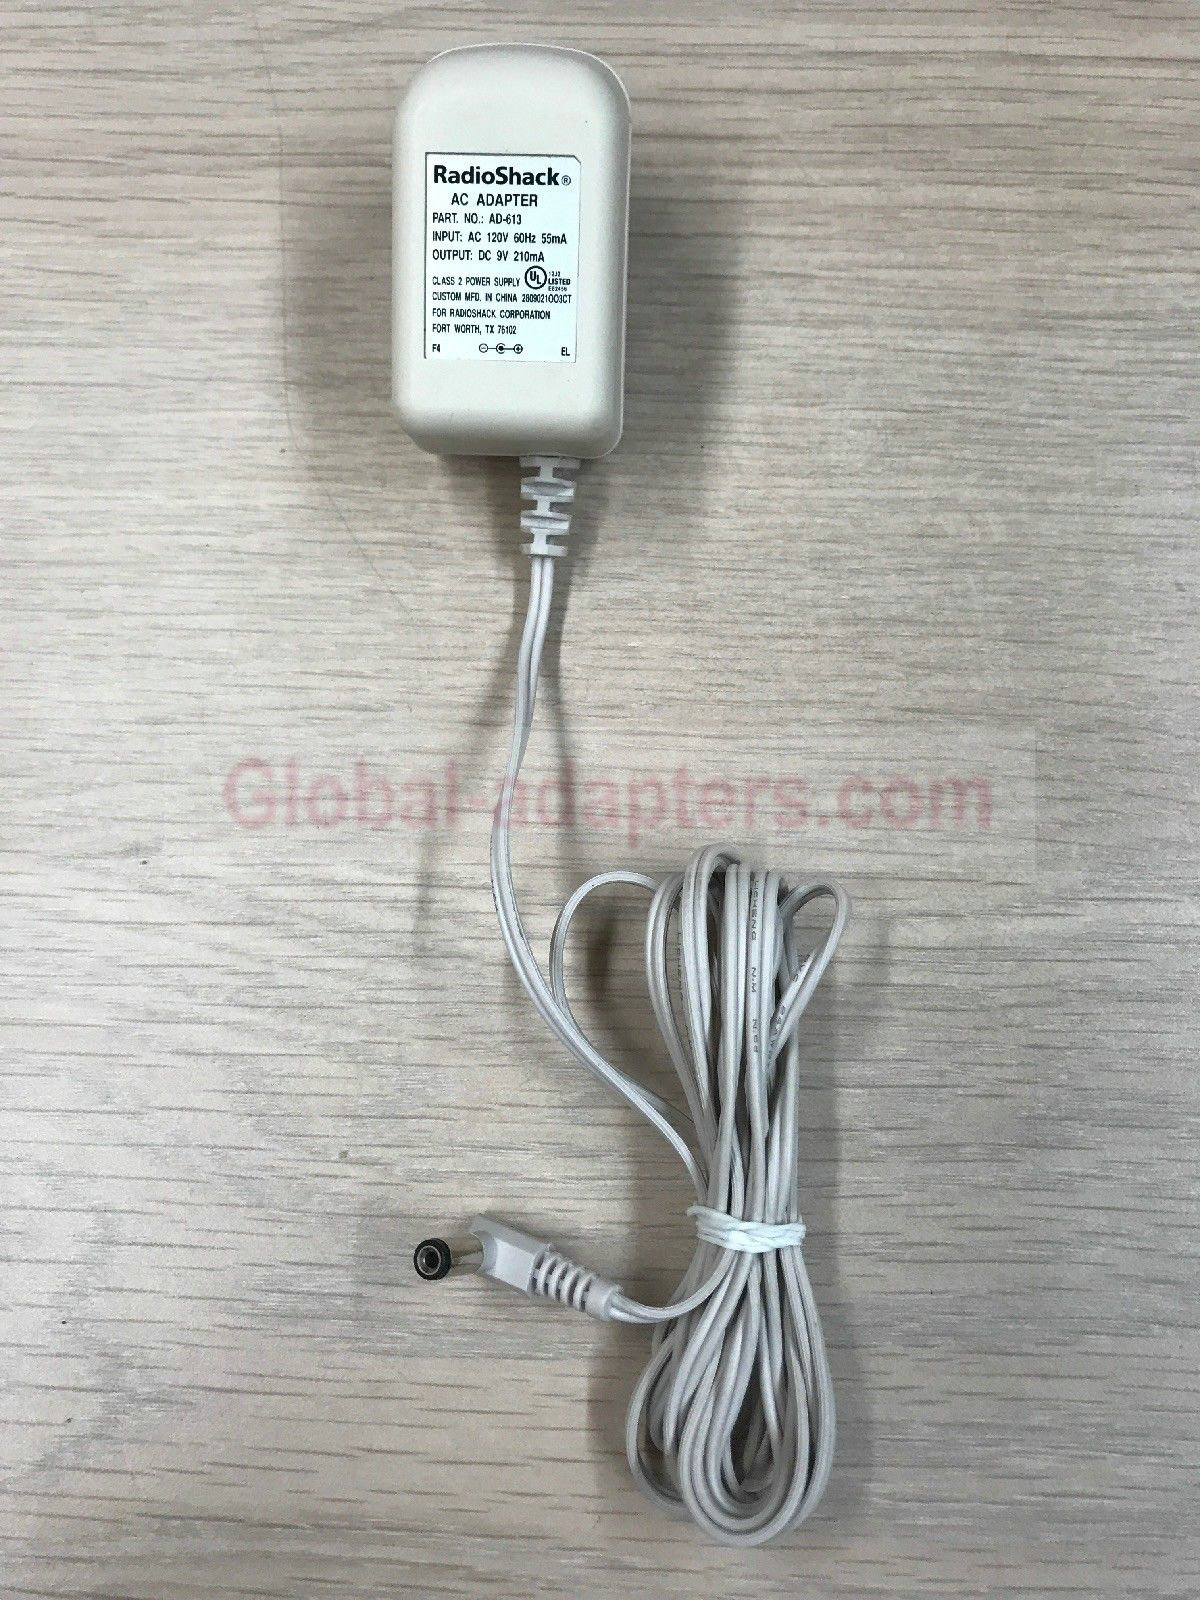 NEW 9V 210mA RadioShack AD-613 AC Power Supply Adapter